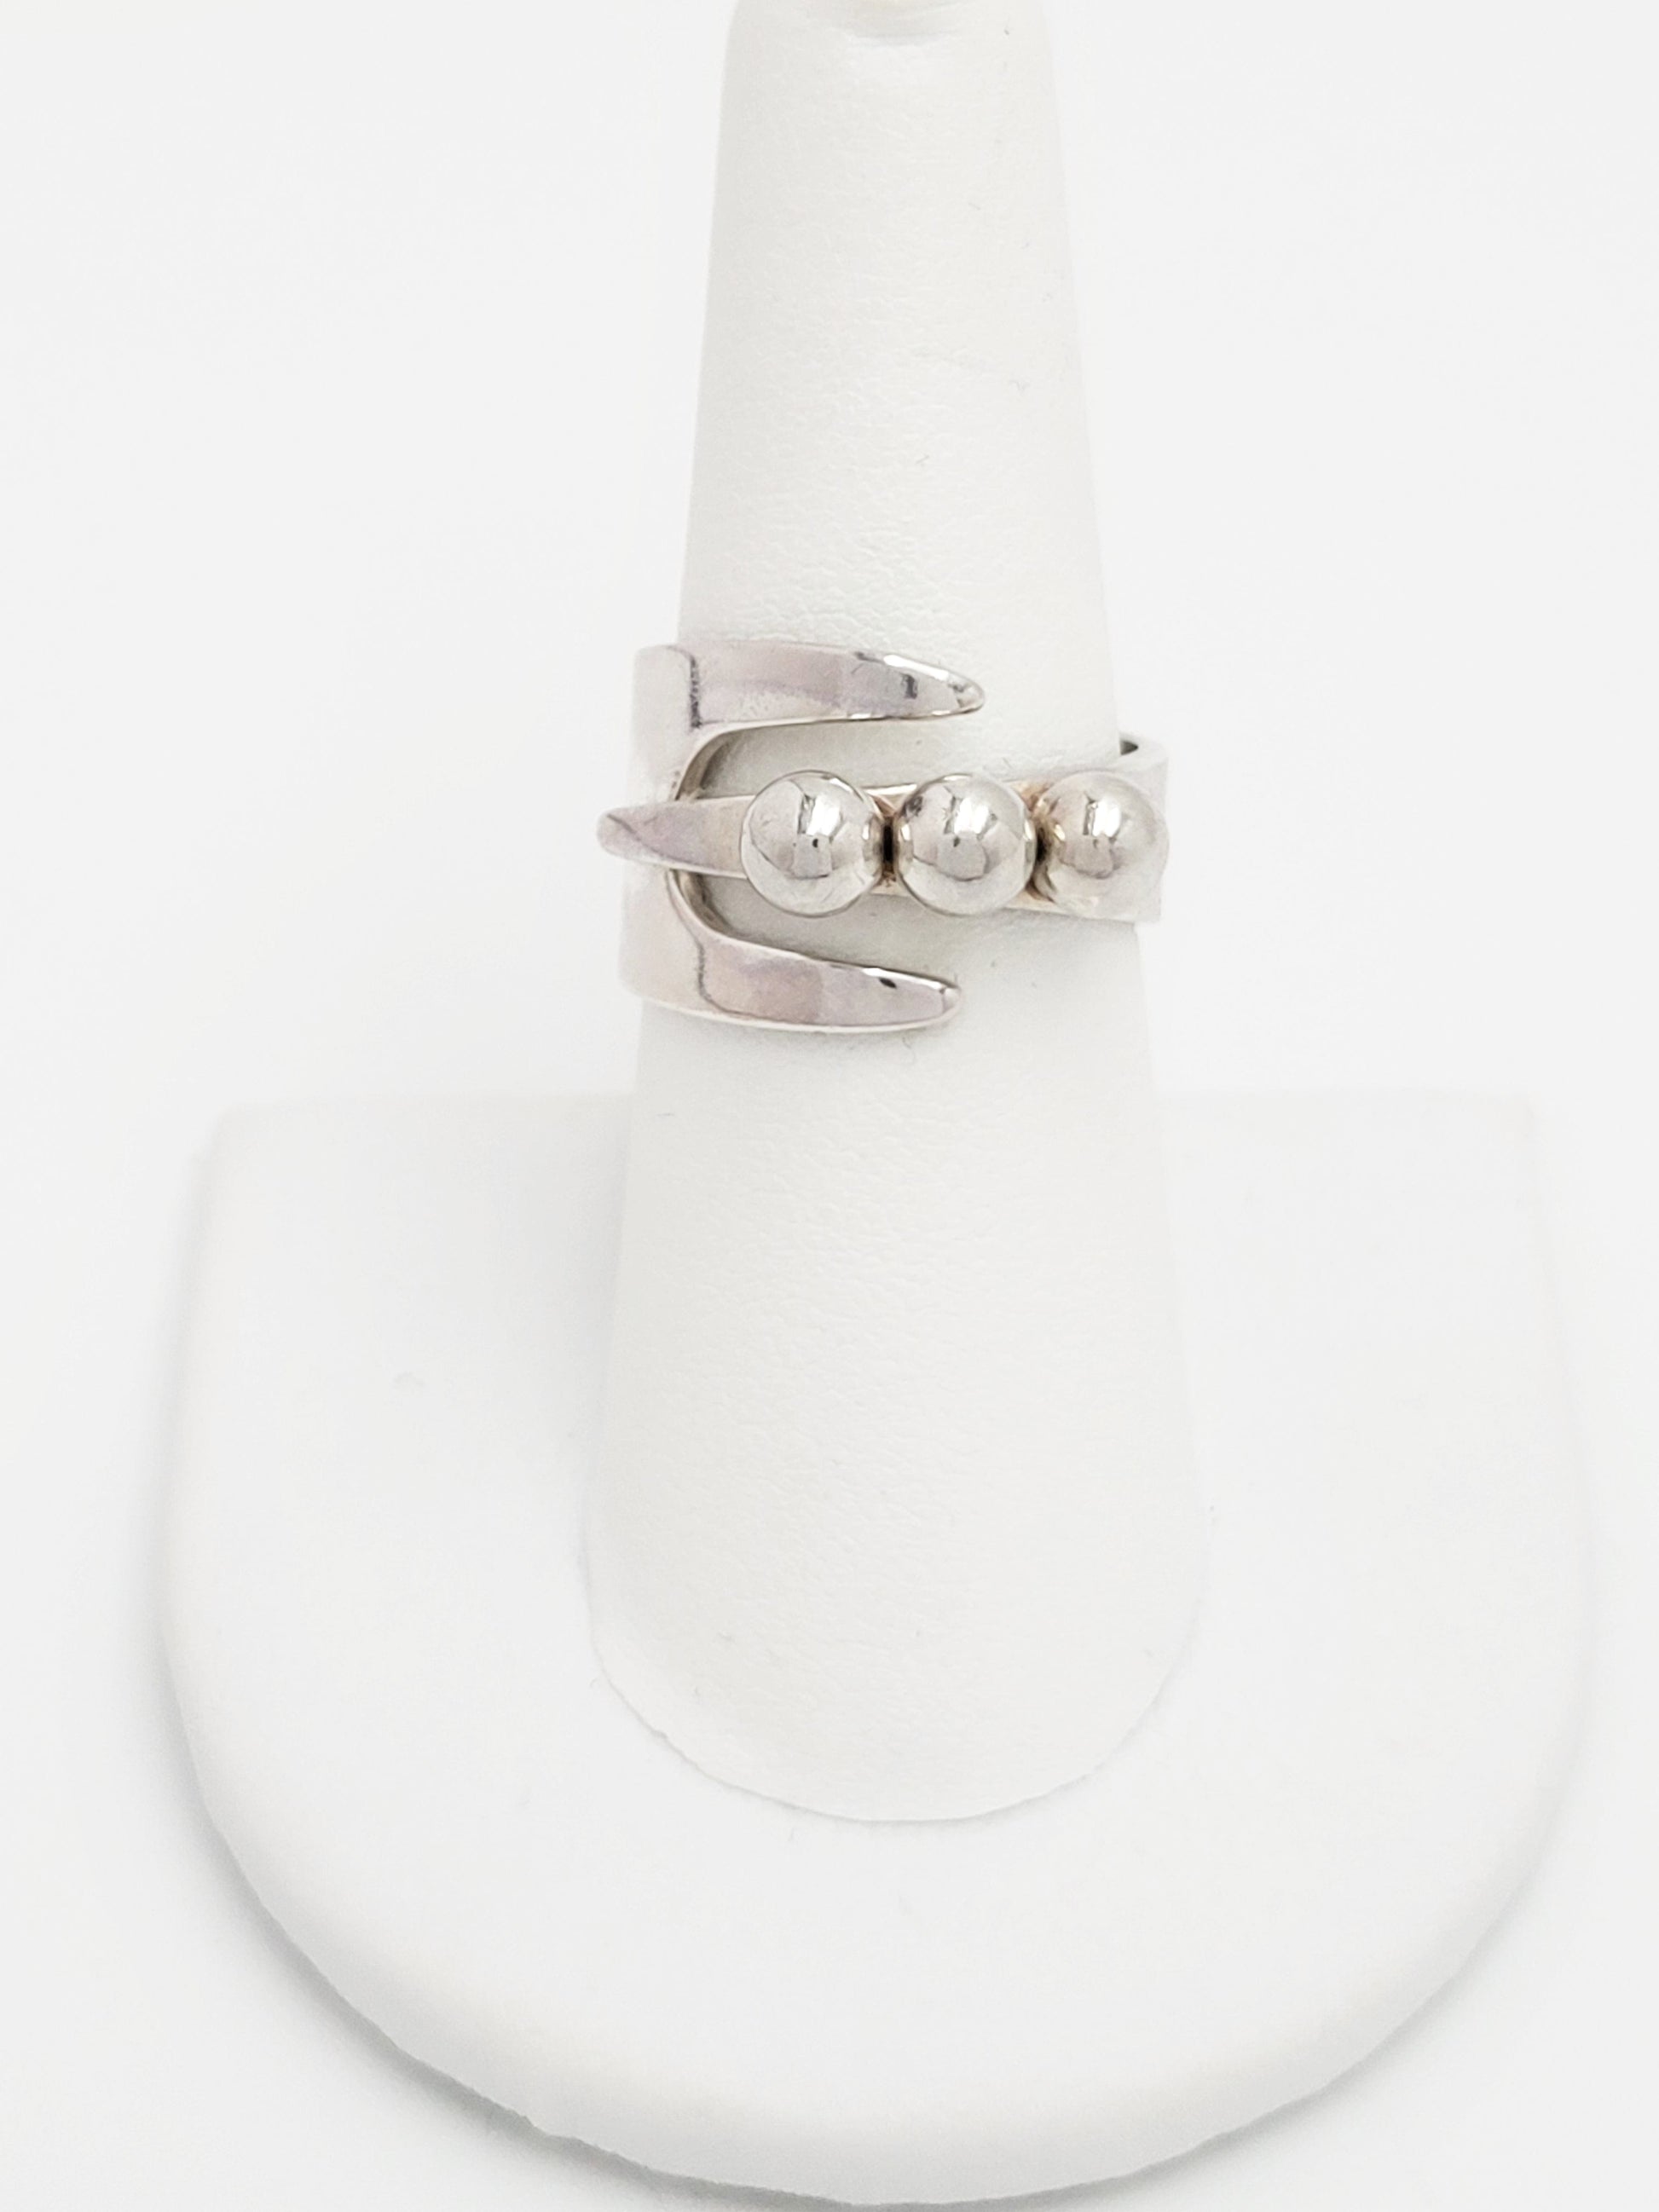 David Andersen Jewelry Norwegian Designer David Andersen Sterling Bypass Wrap Ring 1940/50s